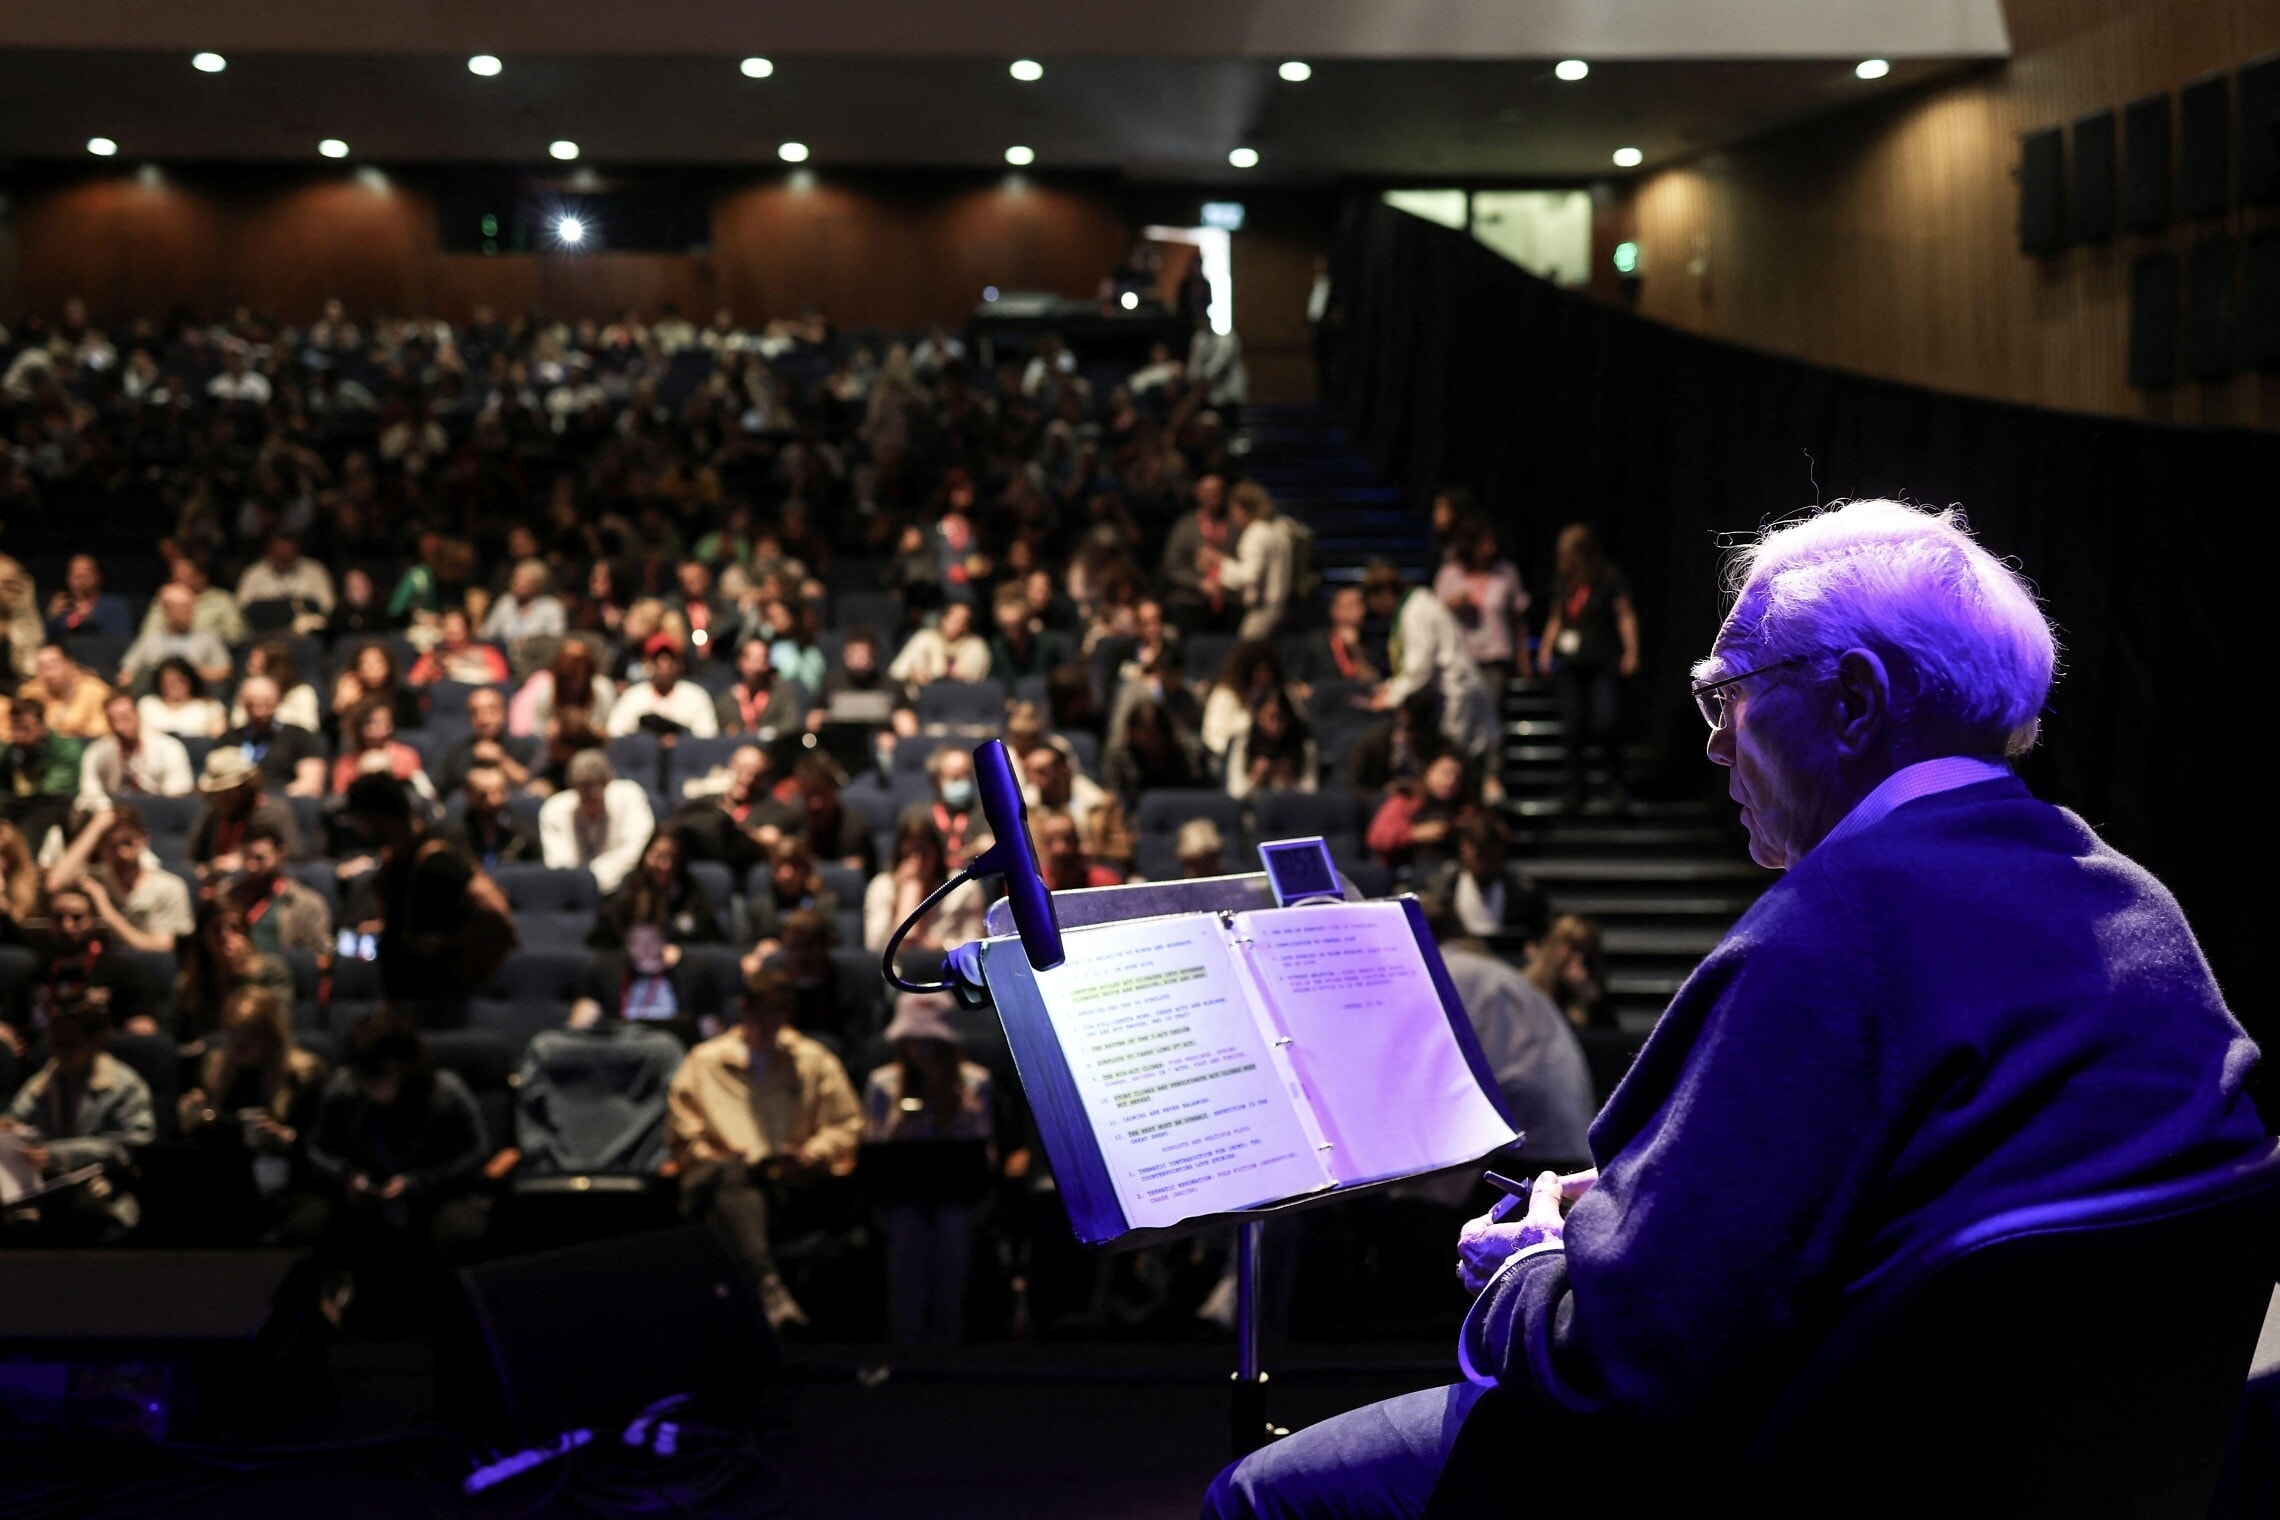 רוברט מקי מנחה את סדנת הכתיבה שלו באוניברסיטת תל אביב, 24 בנובמבר 2022 (צילום: REUTERS/Nir Elias via Alamy)